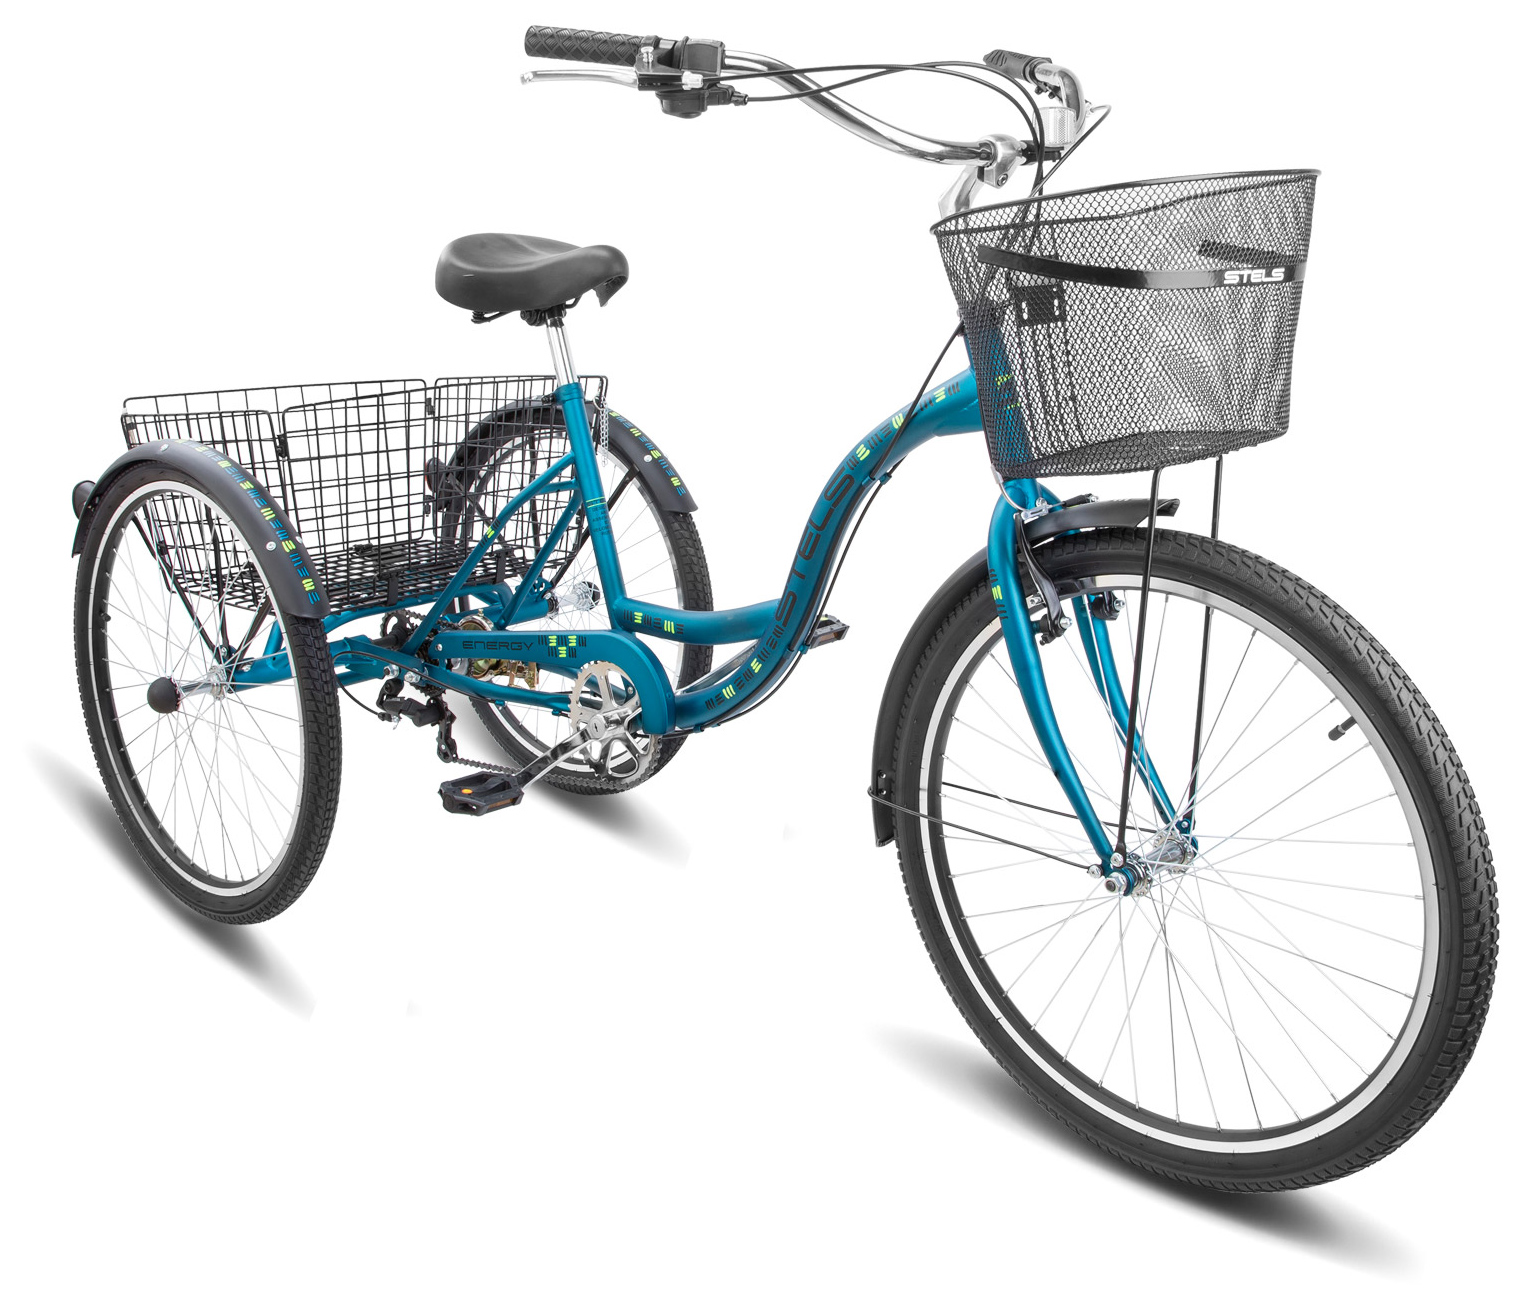  Велосипед Stels Energy VI 26 (V010) 2019